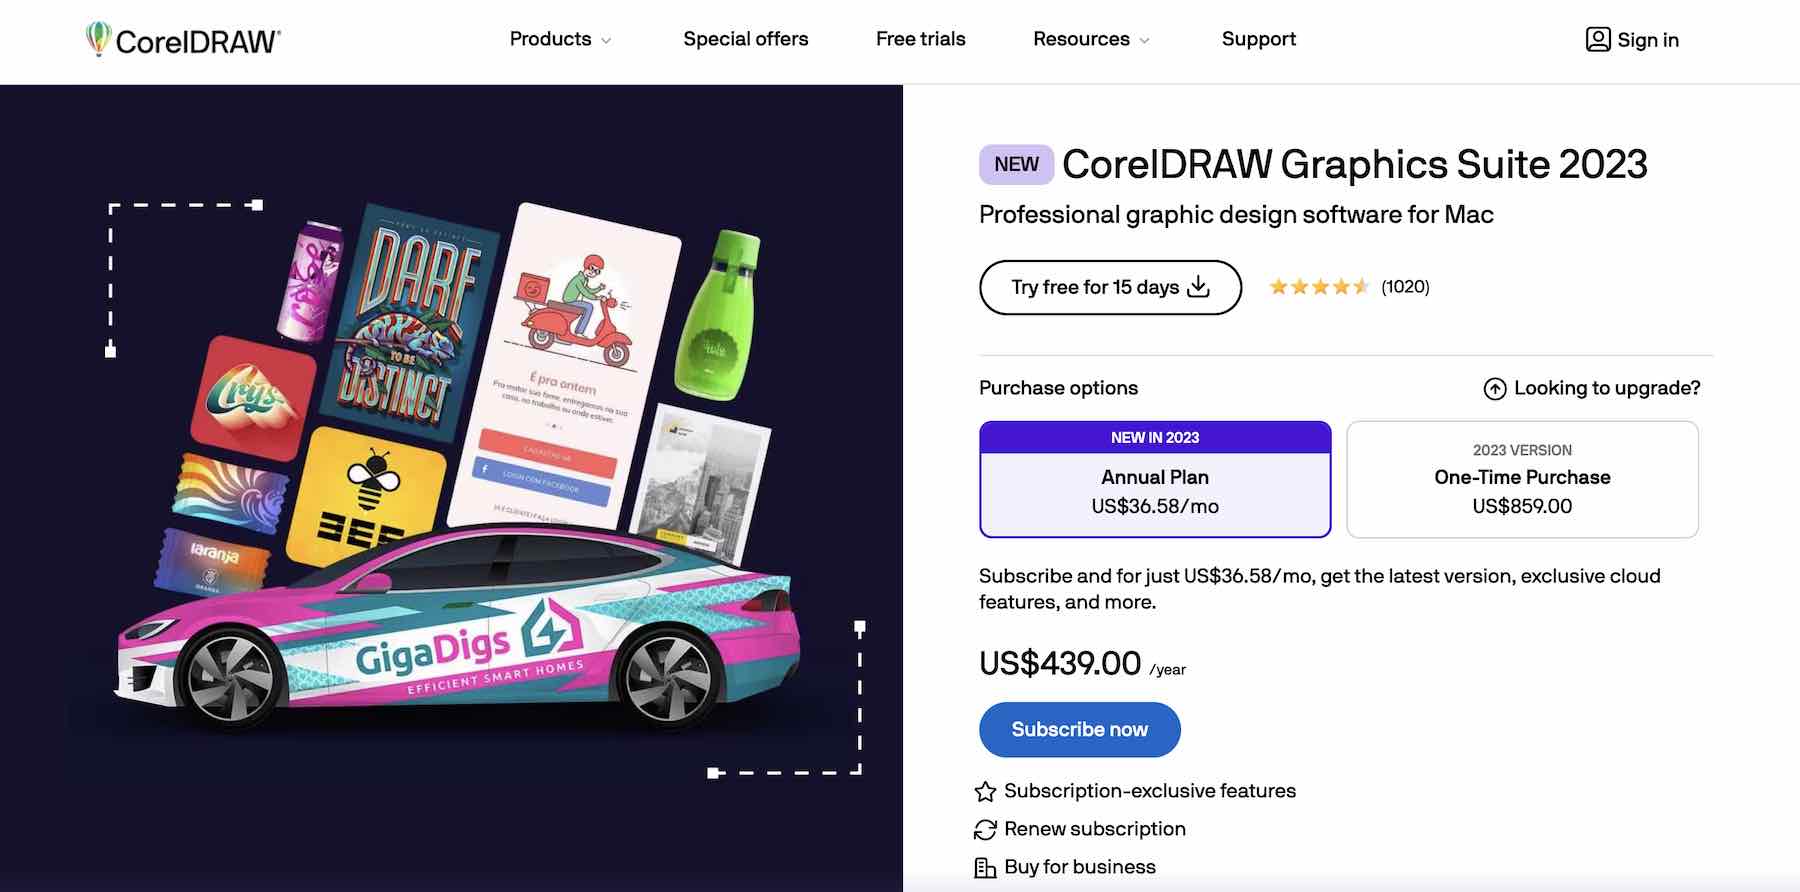 Tangkapan layar situs web CorelDRAW menunjukkan paket harga